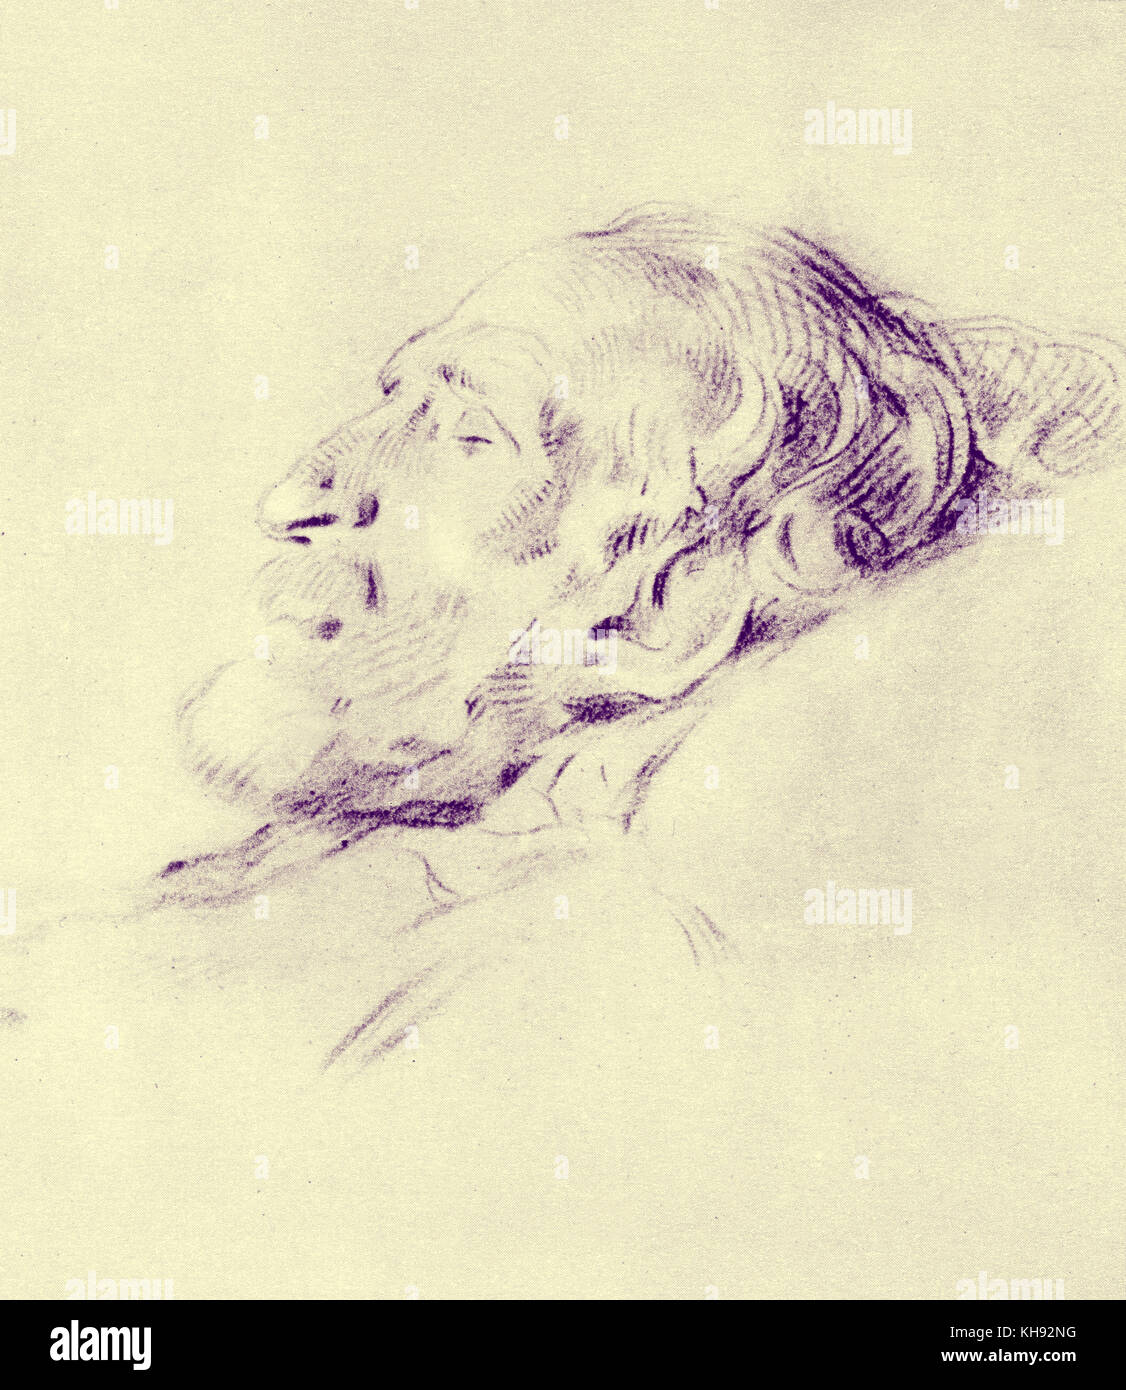 Giuseppe Verdi 's máscara de muerte - Ilustración por L. Pogliaghi. Máscara hecha de estuco. Compositor italiano, 9 o 10 de octubre de 1813 - 27 de enero de 1901. Foto de stock